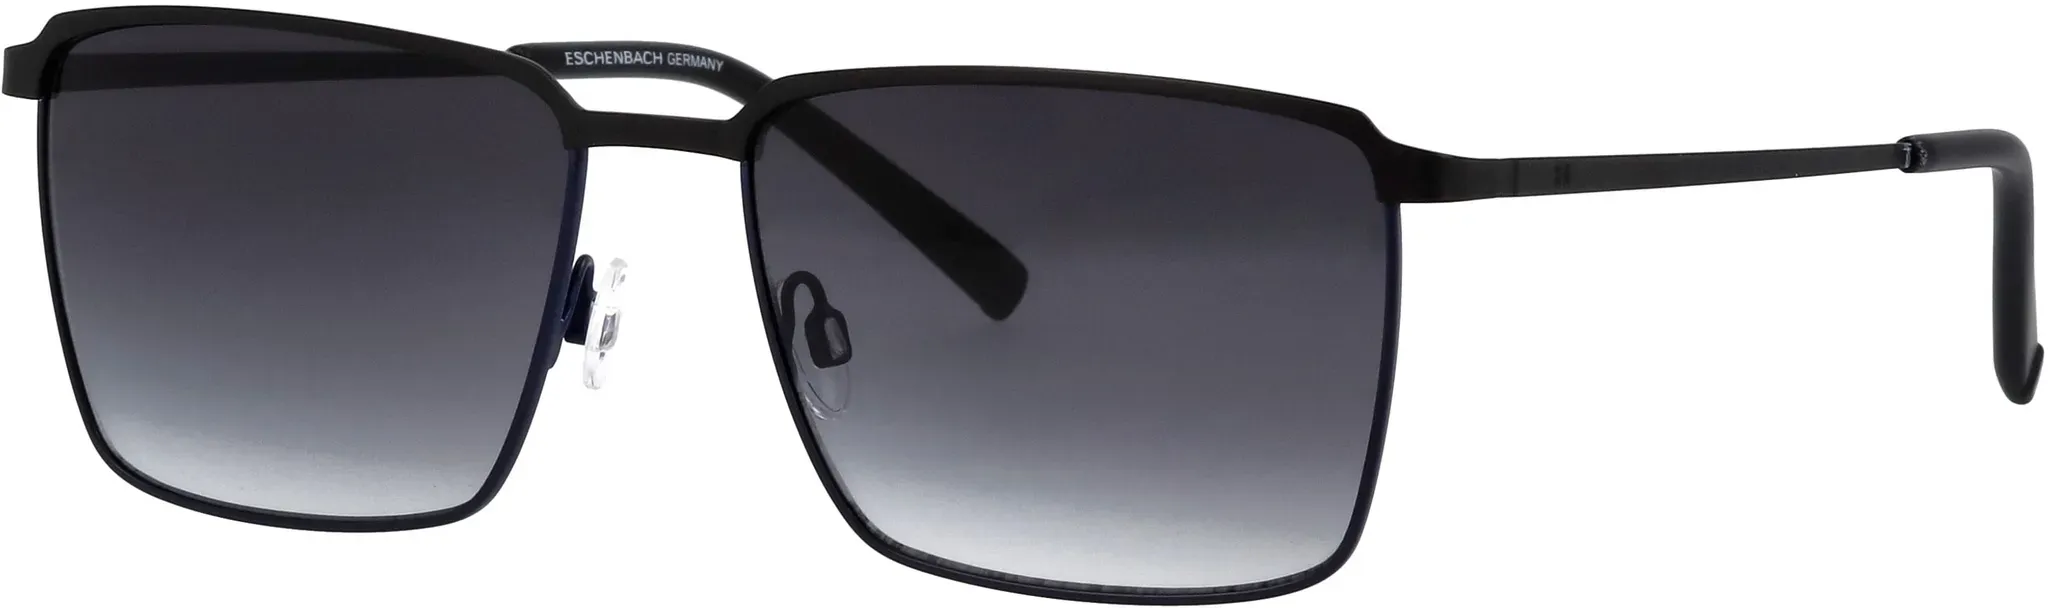 Sonnenbrille HUMPHREY ́S EYEWEAR schwarz Damen Brillen Sonnenbrillen mit leichter Verlaufstönung